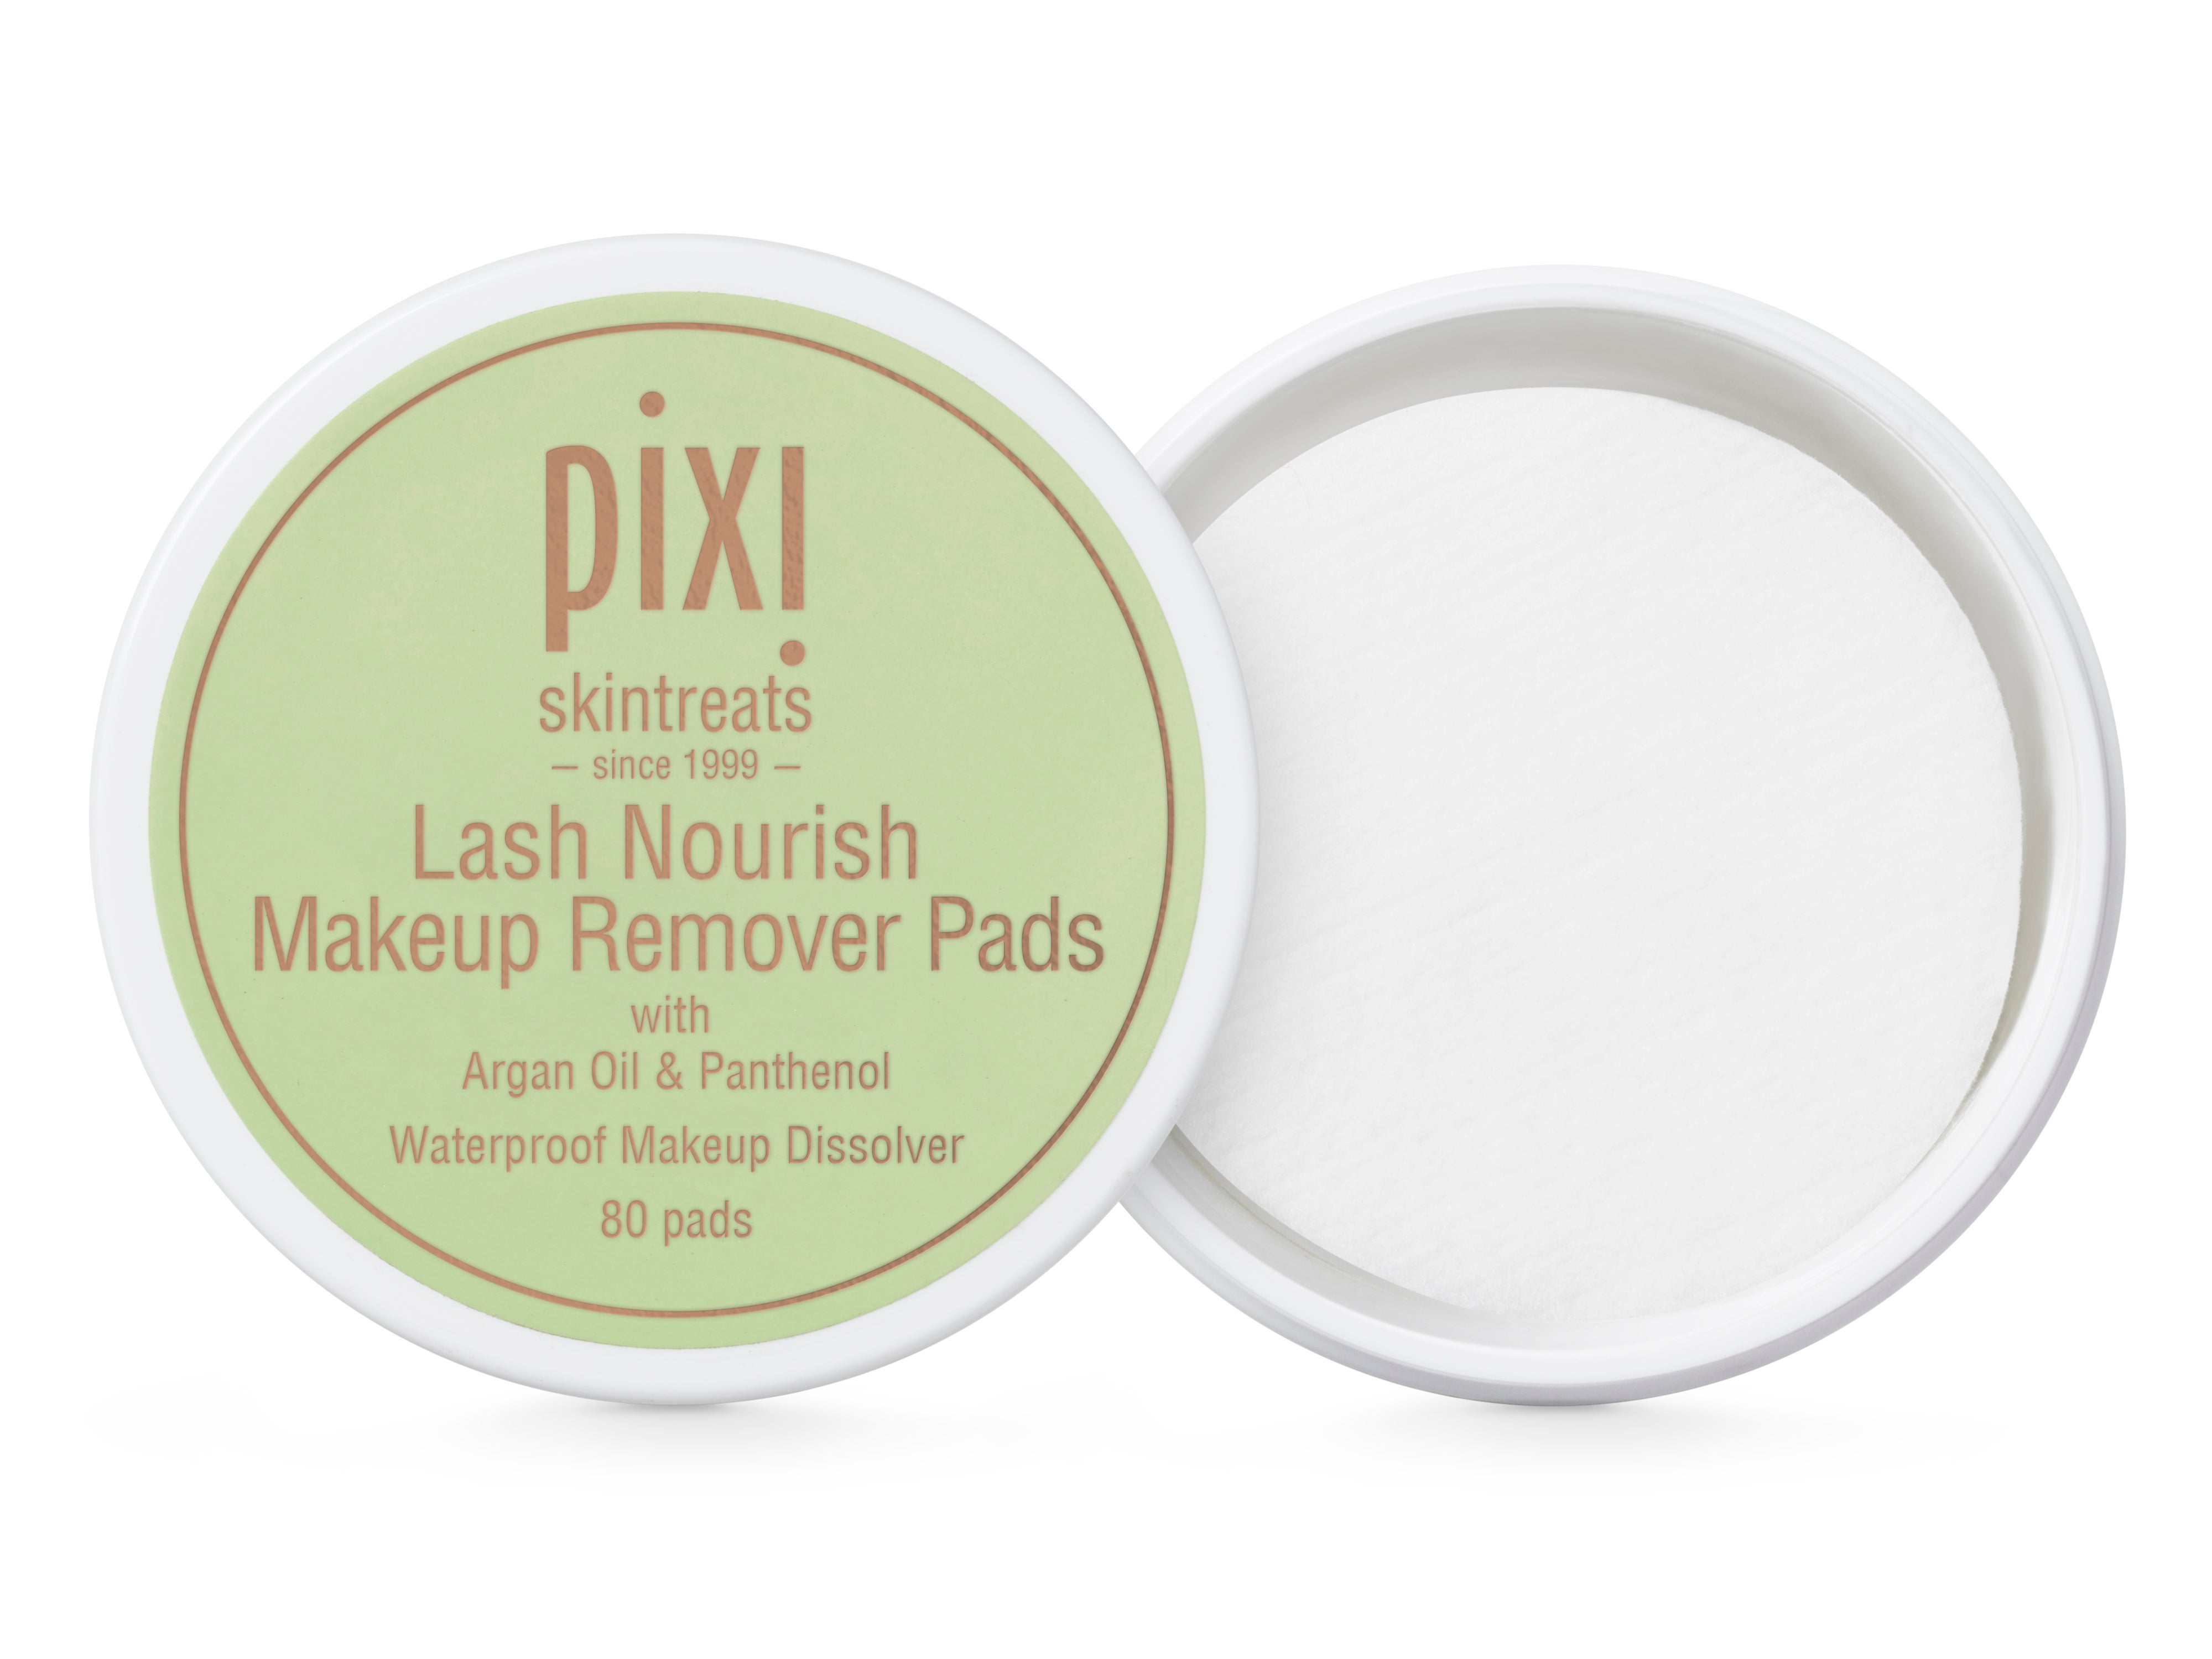 Pixi Lash Nourish Makeup Remover Pads-05FEB16.jpg